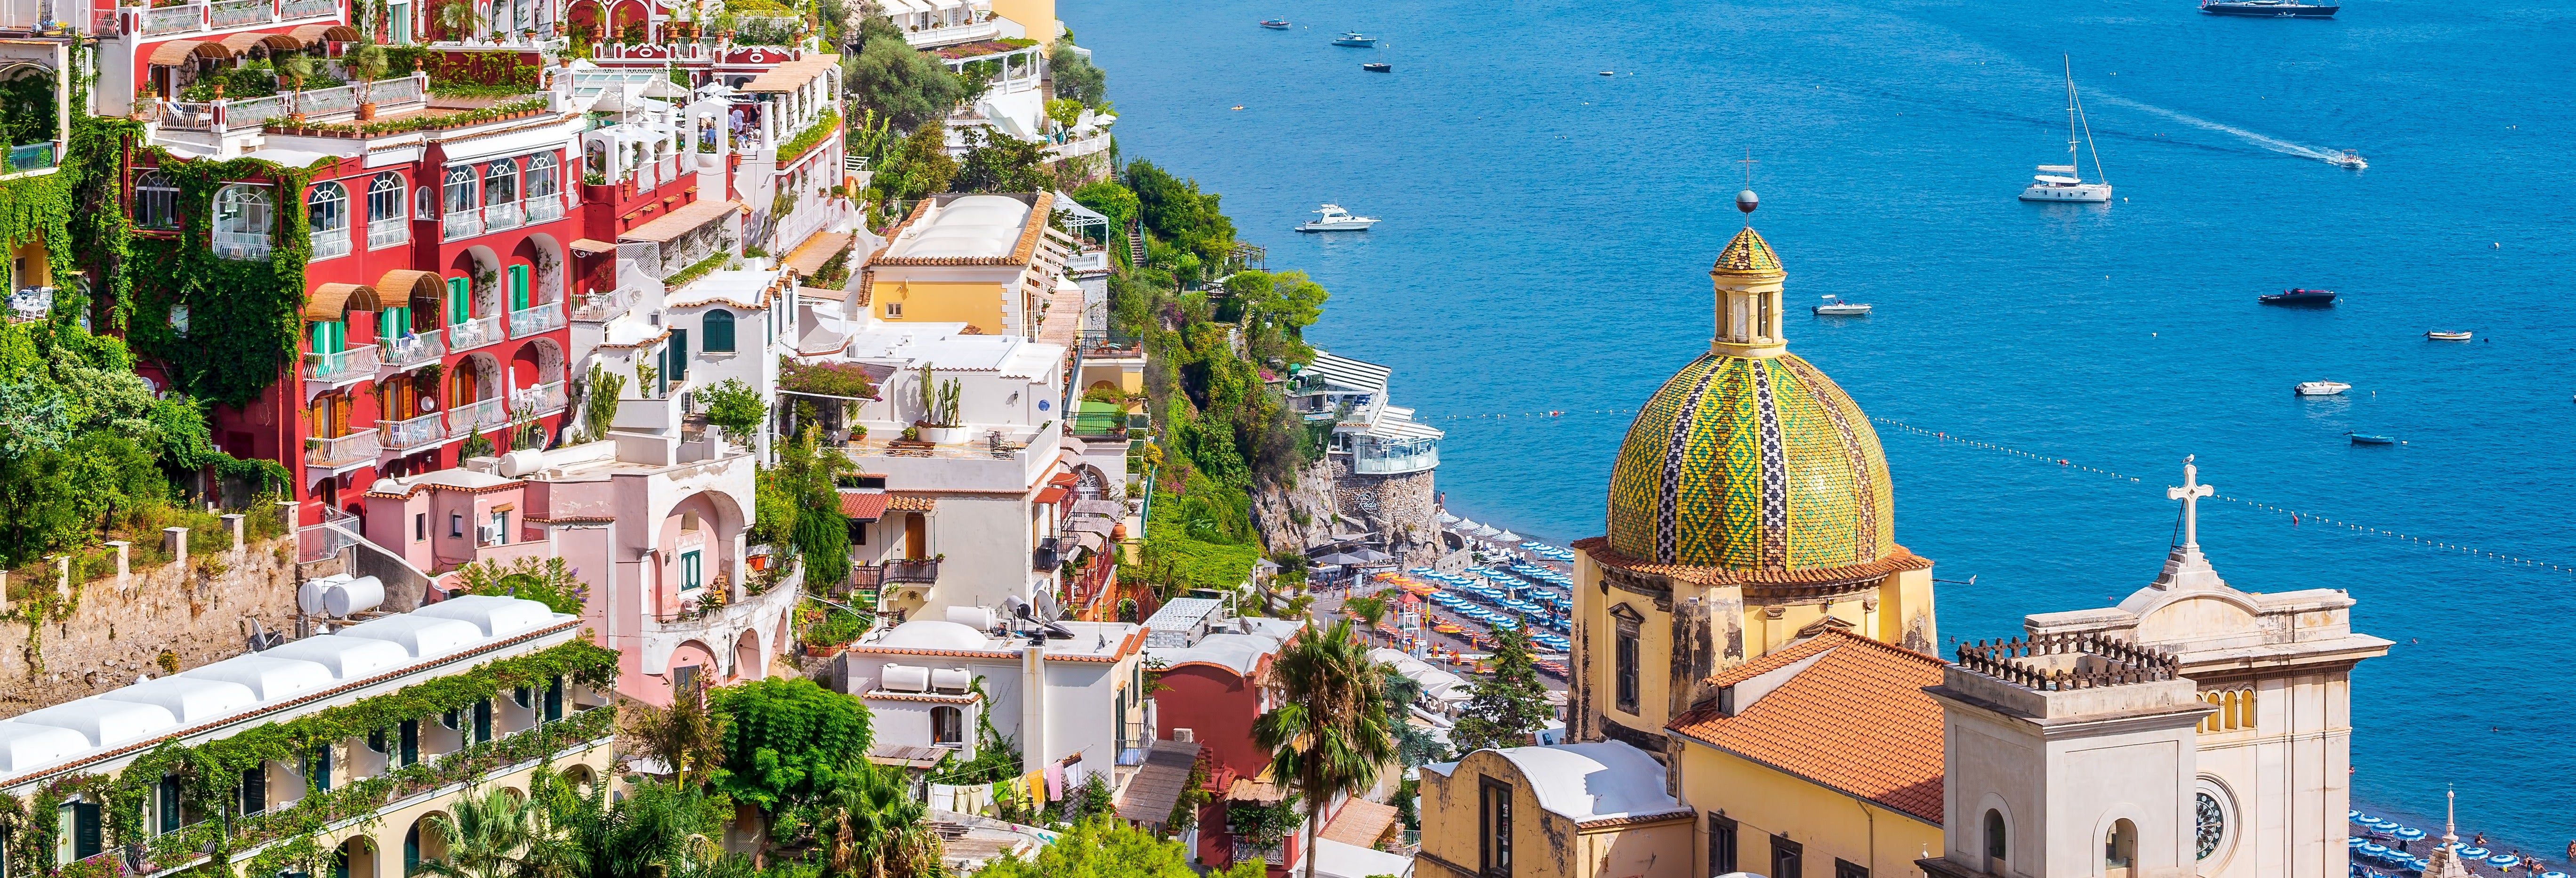 Excursão a Amalfi e Positano de barco